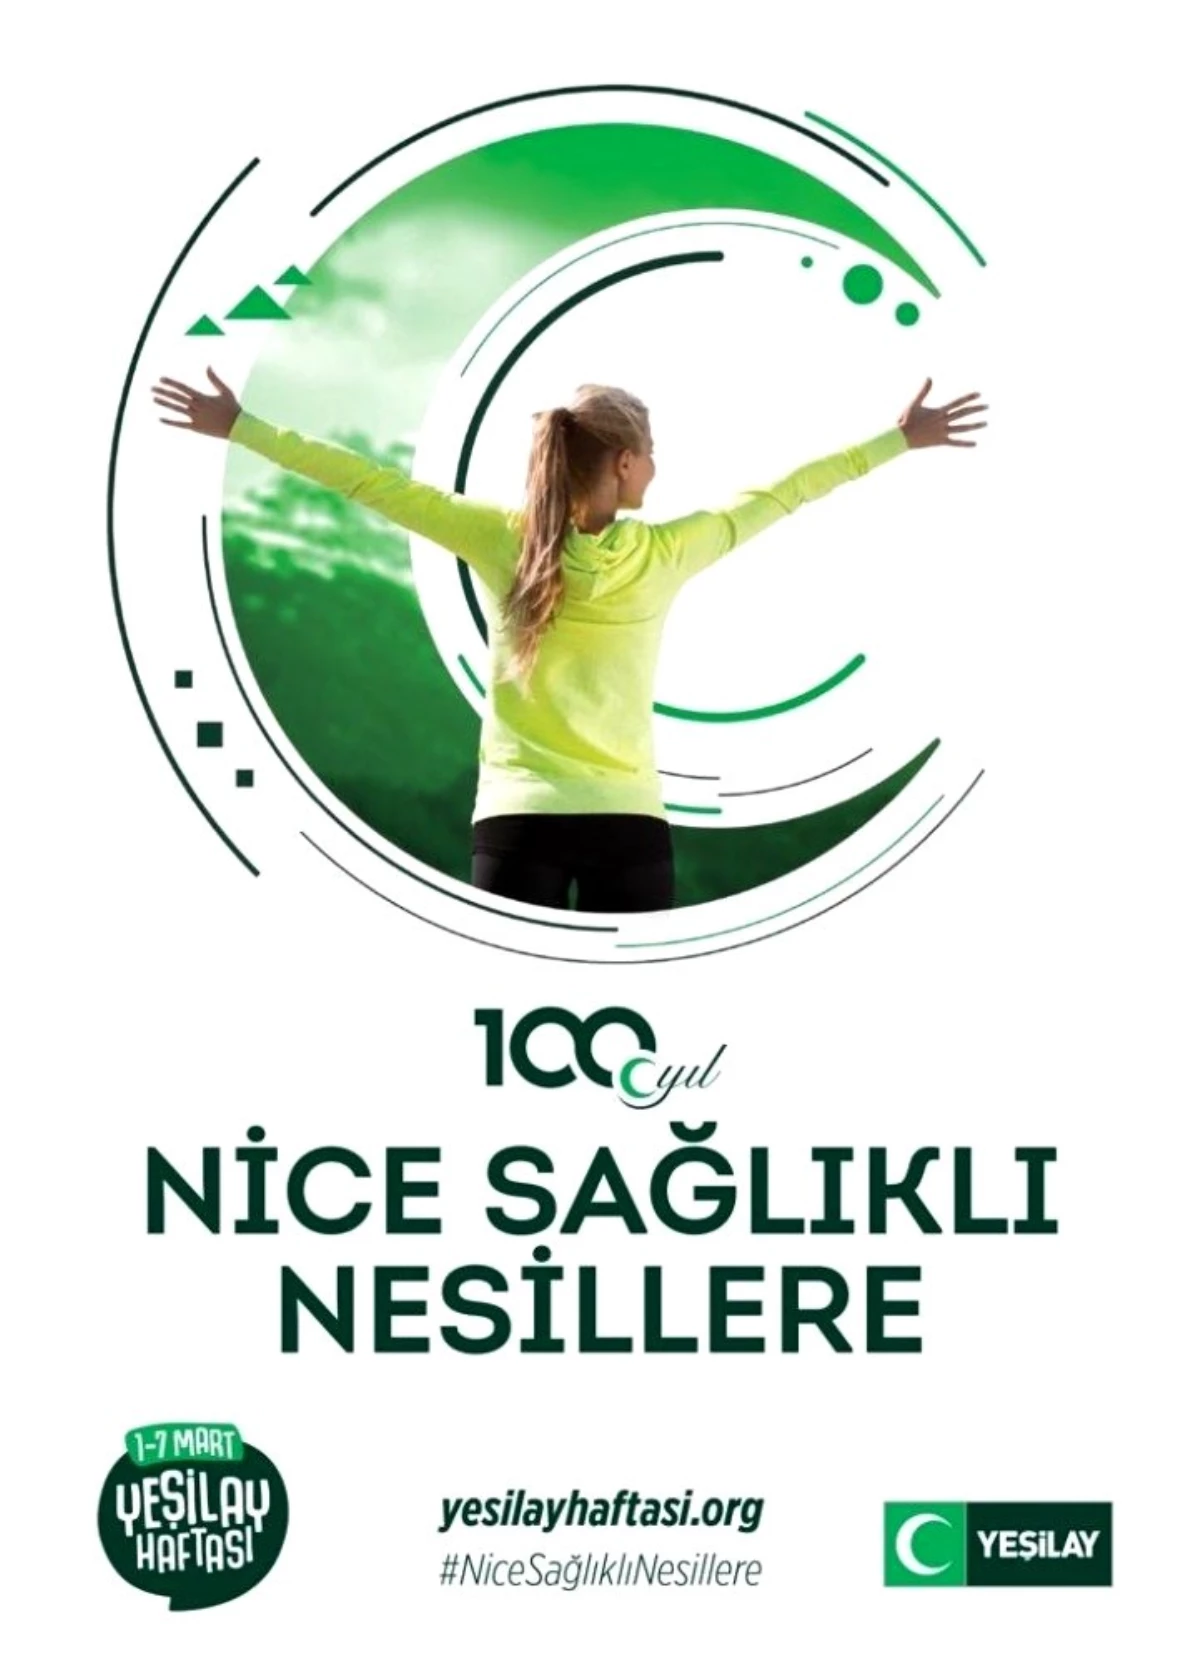 Yeşilay Erzurum Başkanı Başkanı Salih Kaygusuz, "Yeşilay 100 yaşında, Nice Sağlıklı Nesillere"